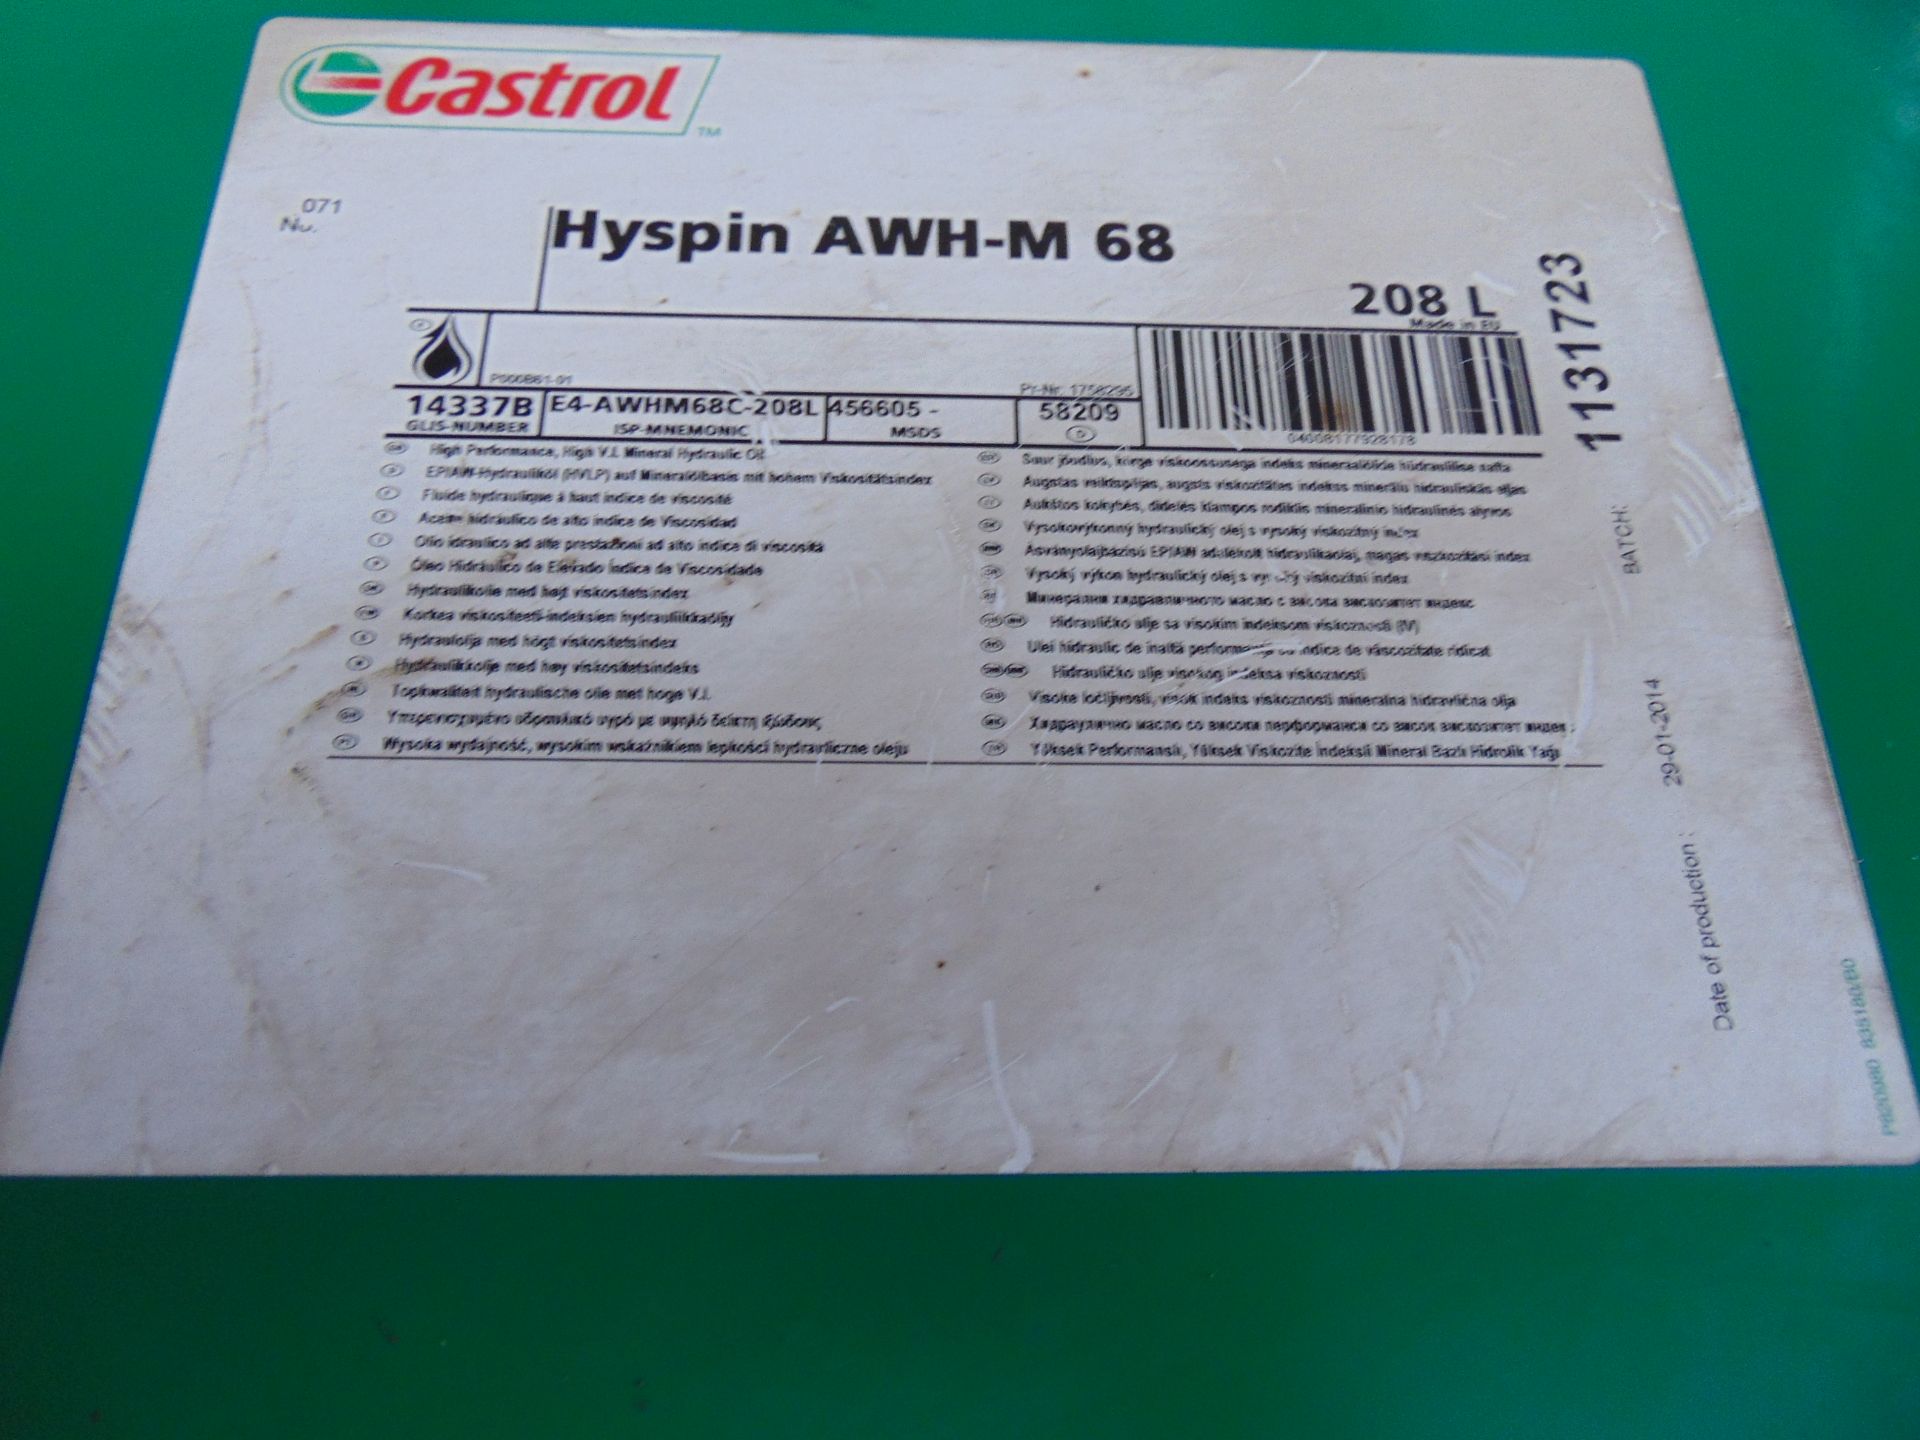 1 x Unissued 208L Drum of Castrol Hyspin AWH-M 68 Hydraulic Oil - Bild 5 aus 6